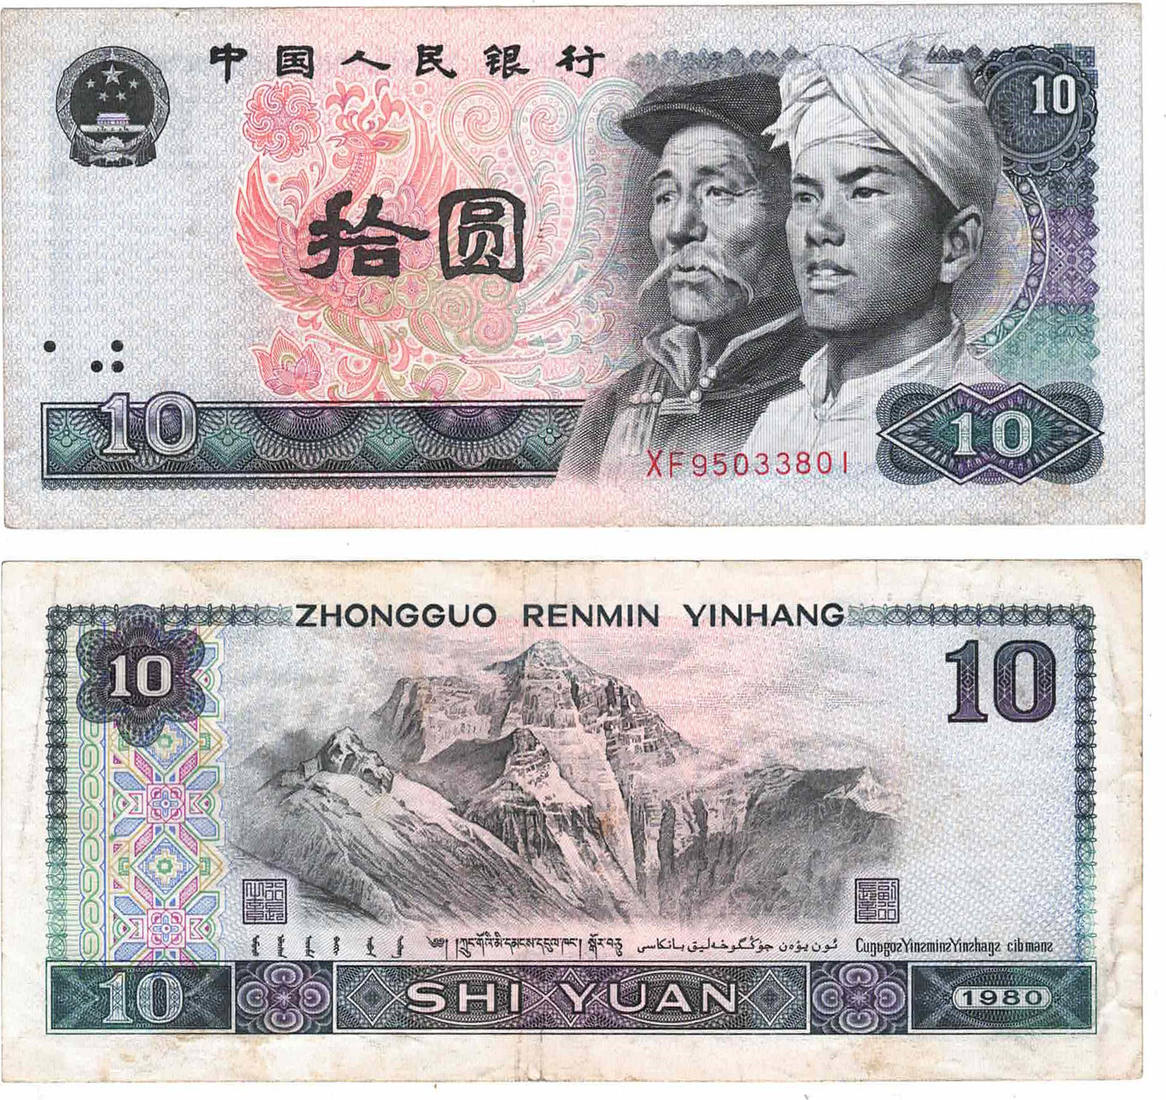 10 юаней в тенге. 10 Юаней Китай банкноты. Zhongguo Renmin Yinhang. Zhongguo Renmin Yinhang 1980 купюра. Китайские банкноты 1980.